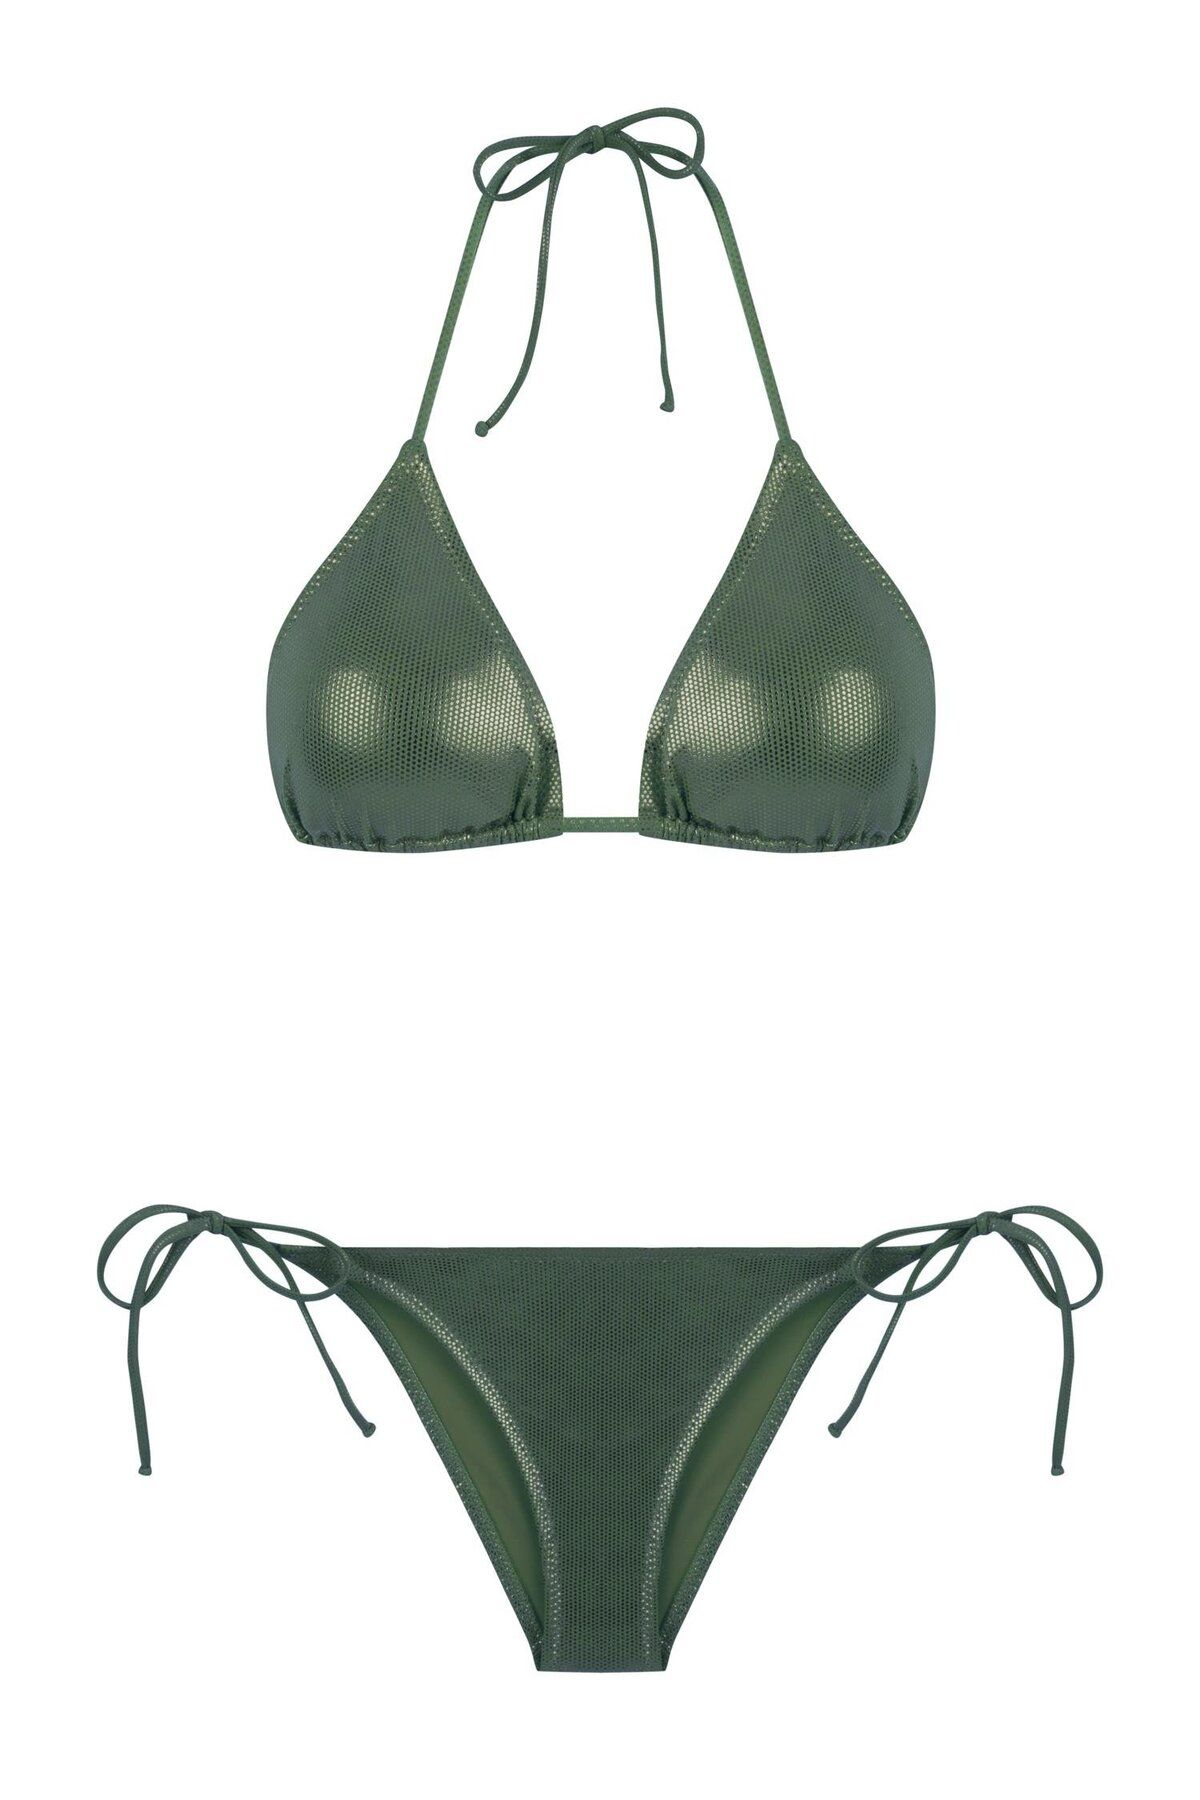 Aquella Parlak Yeşil Üçgen Bikini Takım